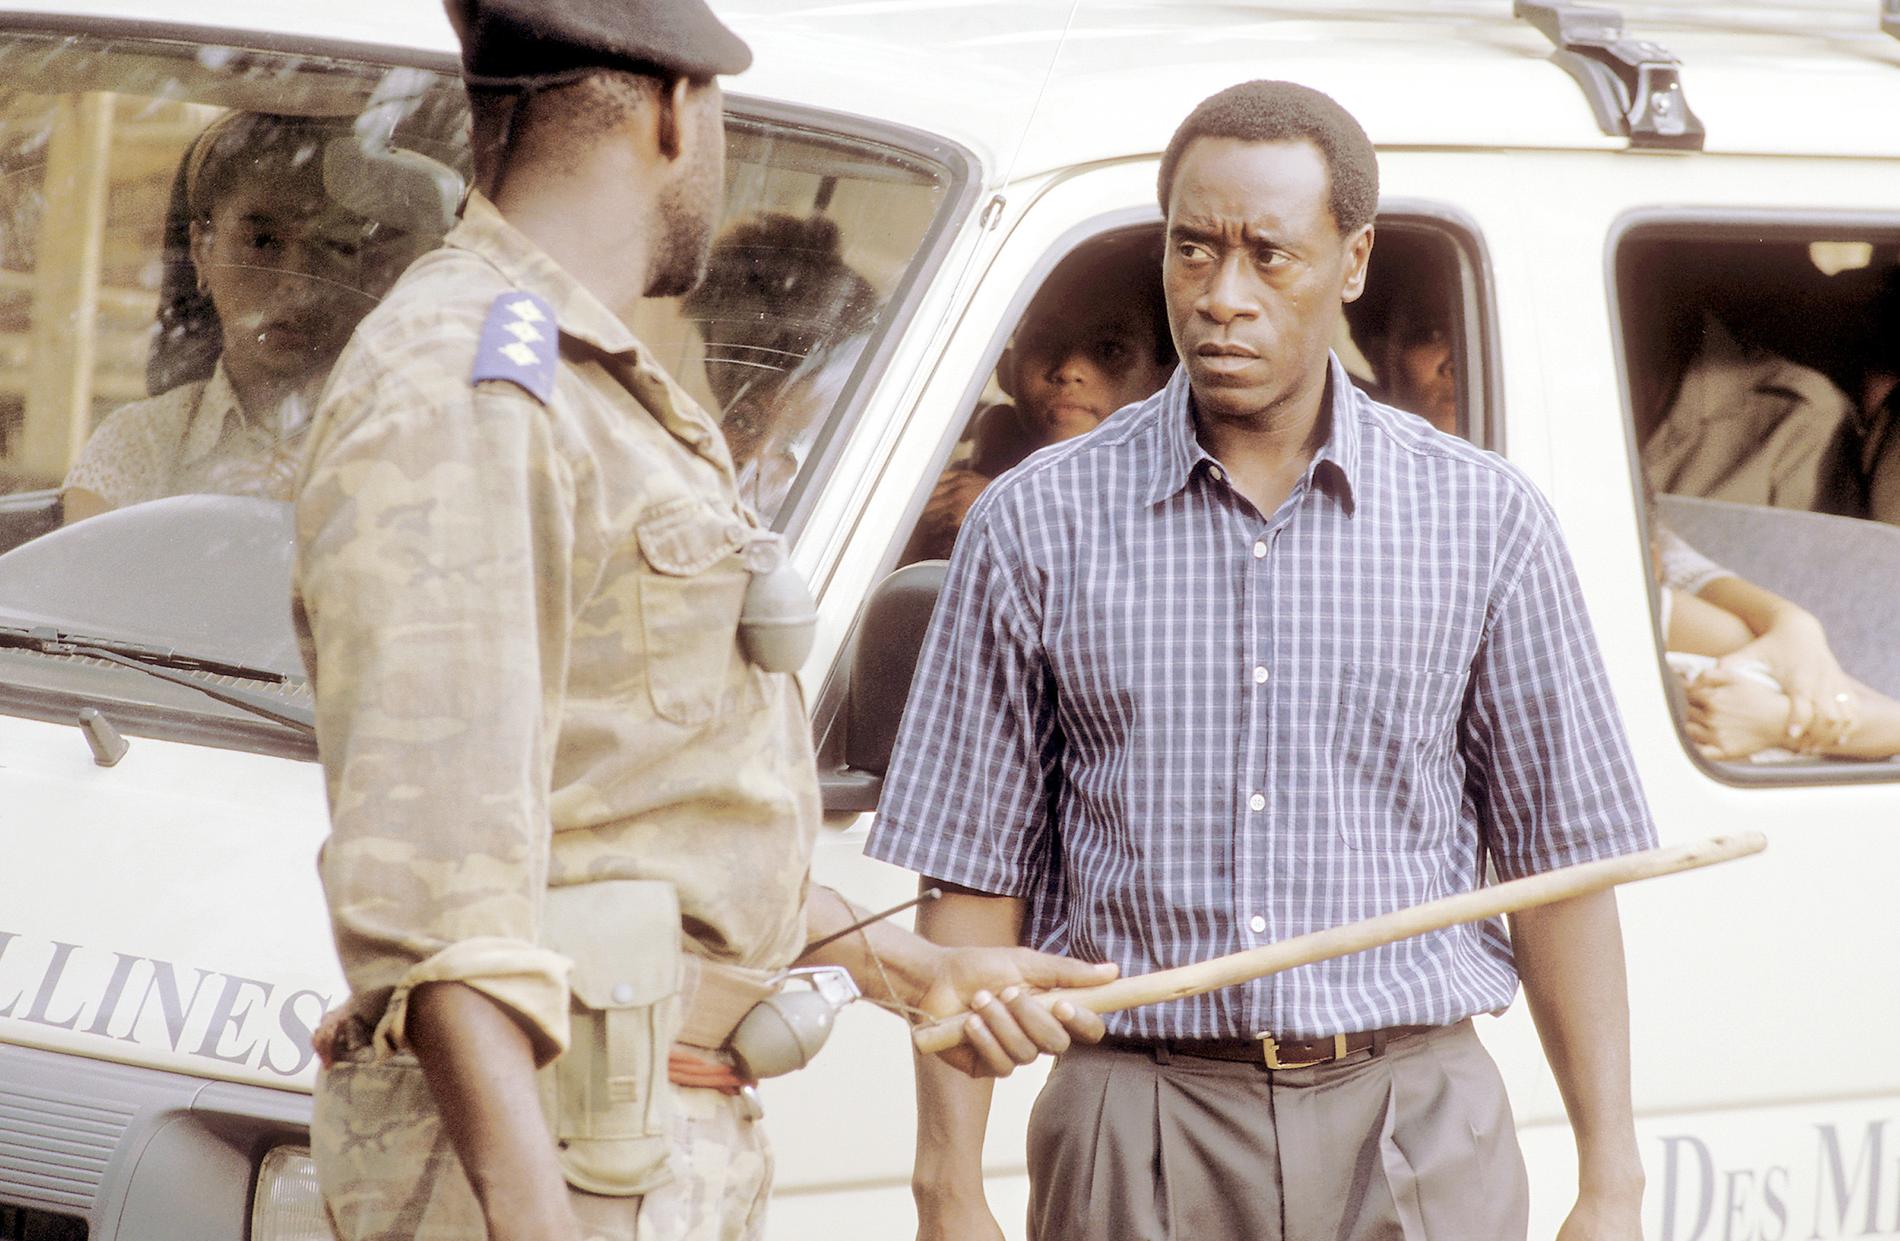 Stillbilden från filmen ”Hotel Rwanda” där Rusesabagina spelades av Don Cheadle.